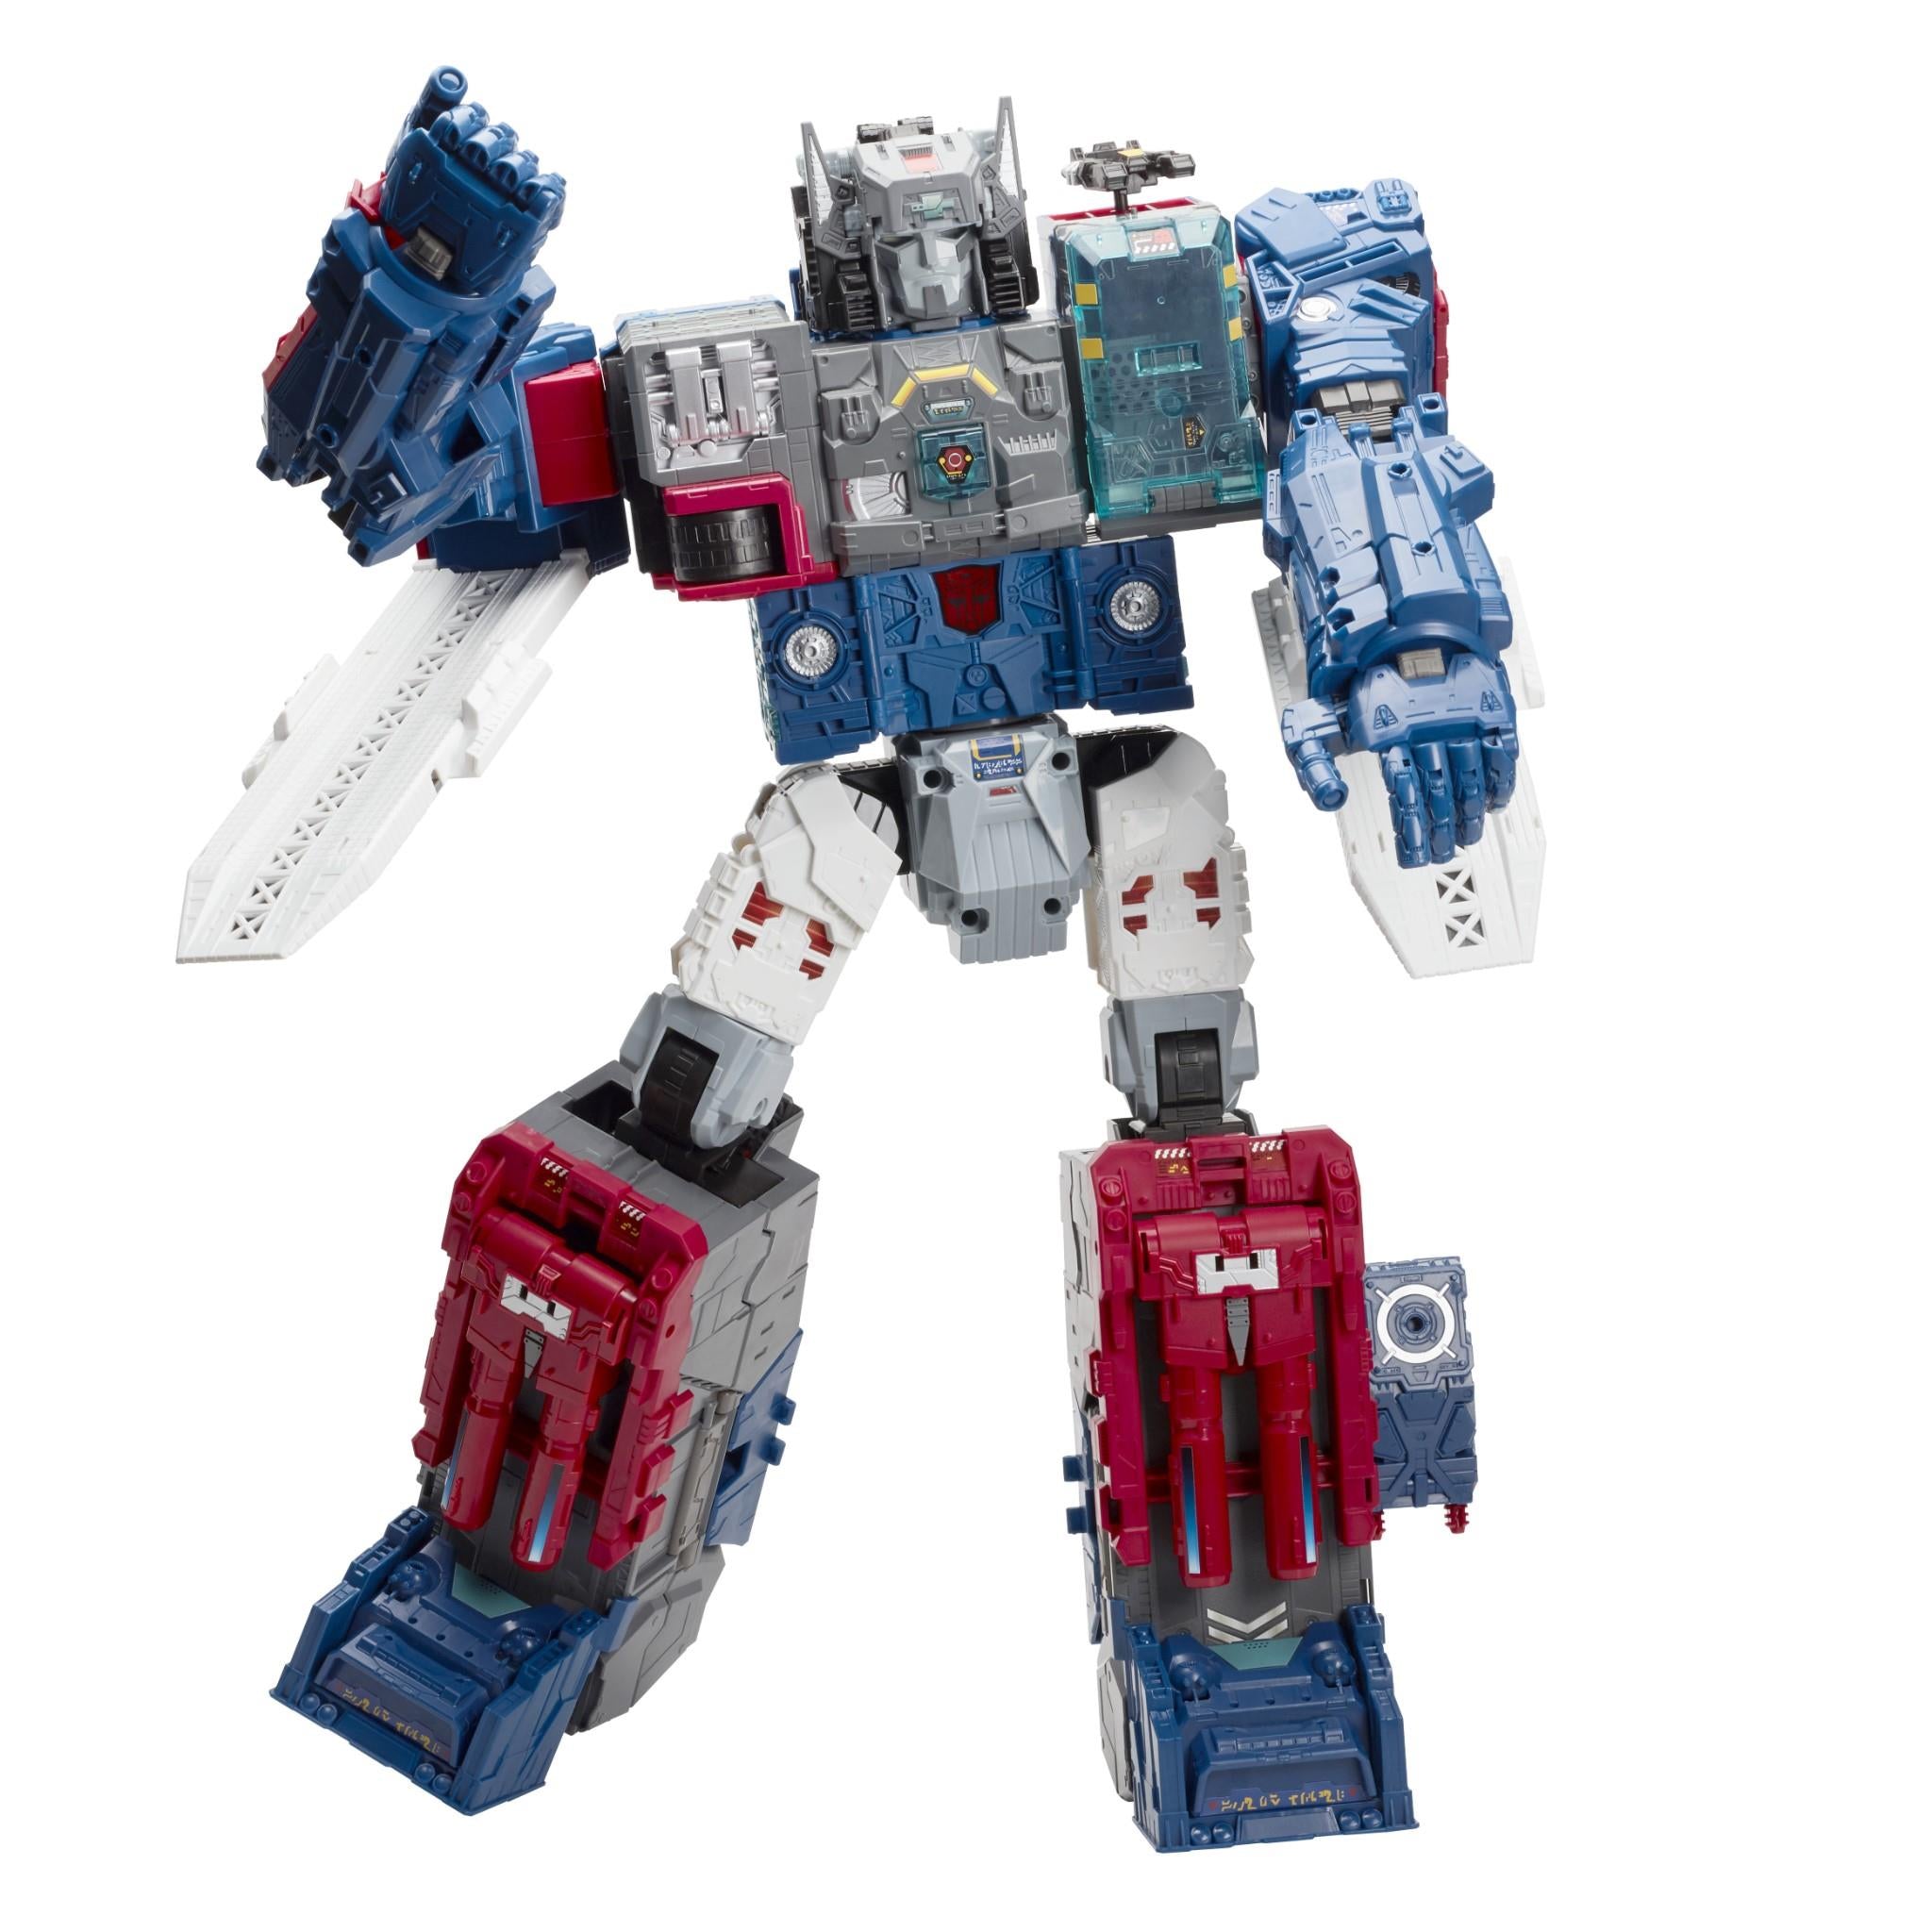 transformers - generations: titans return - titan class fortress maximus figure